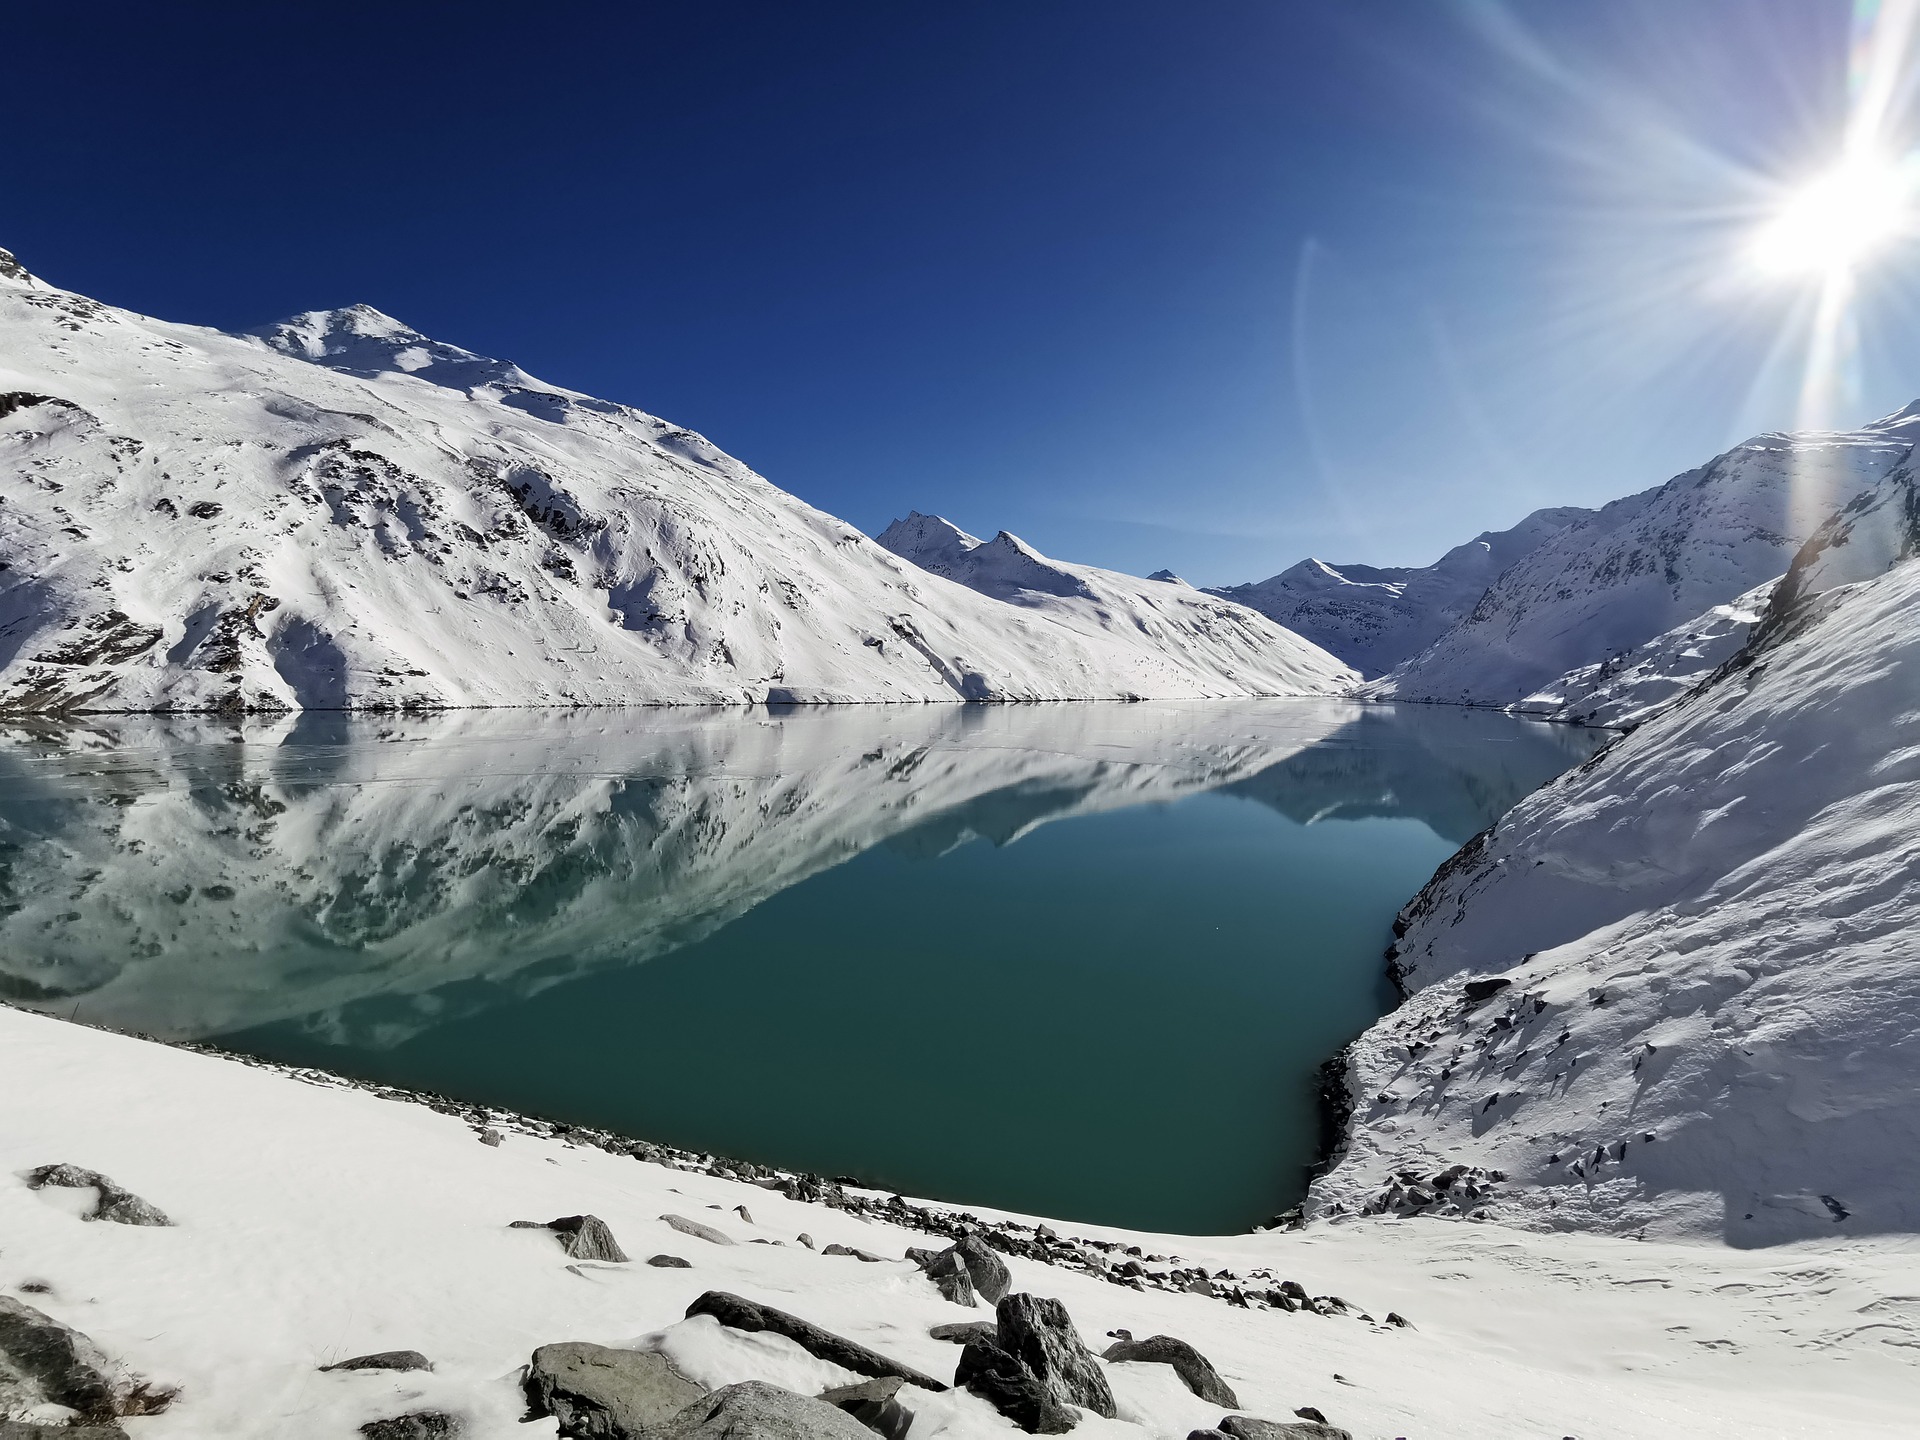 Projets de production hydroélectrique hivernale en Valais